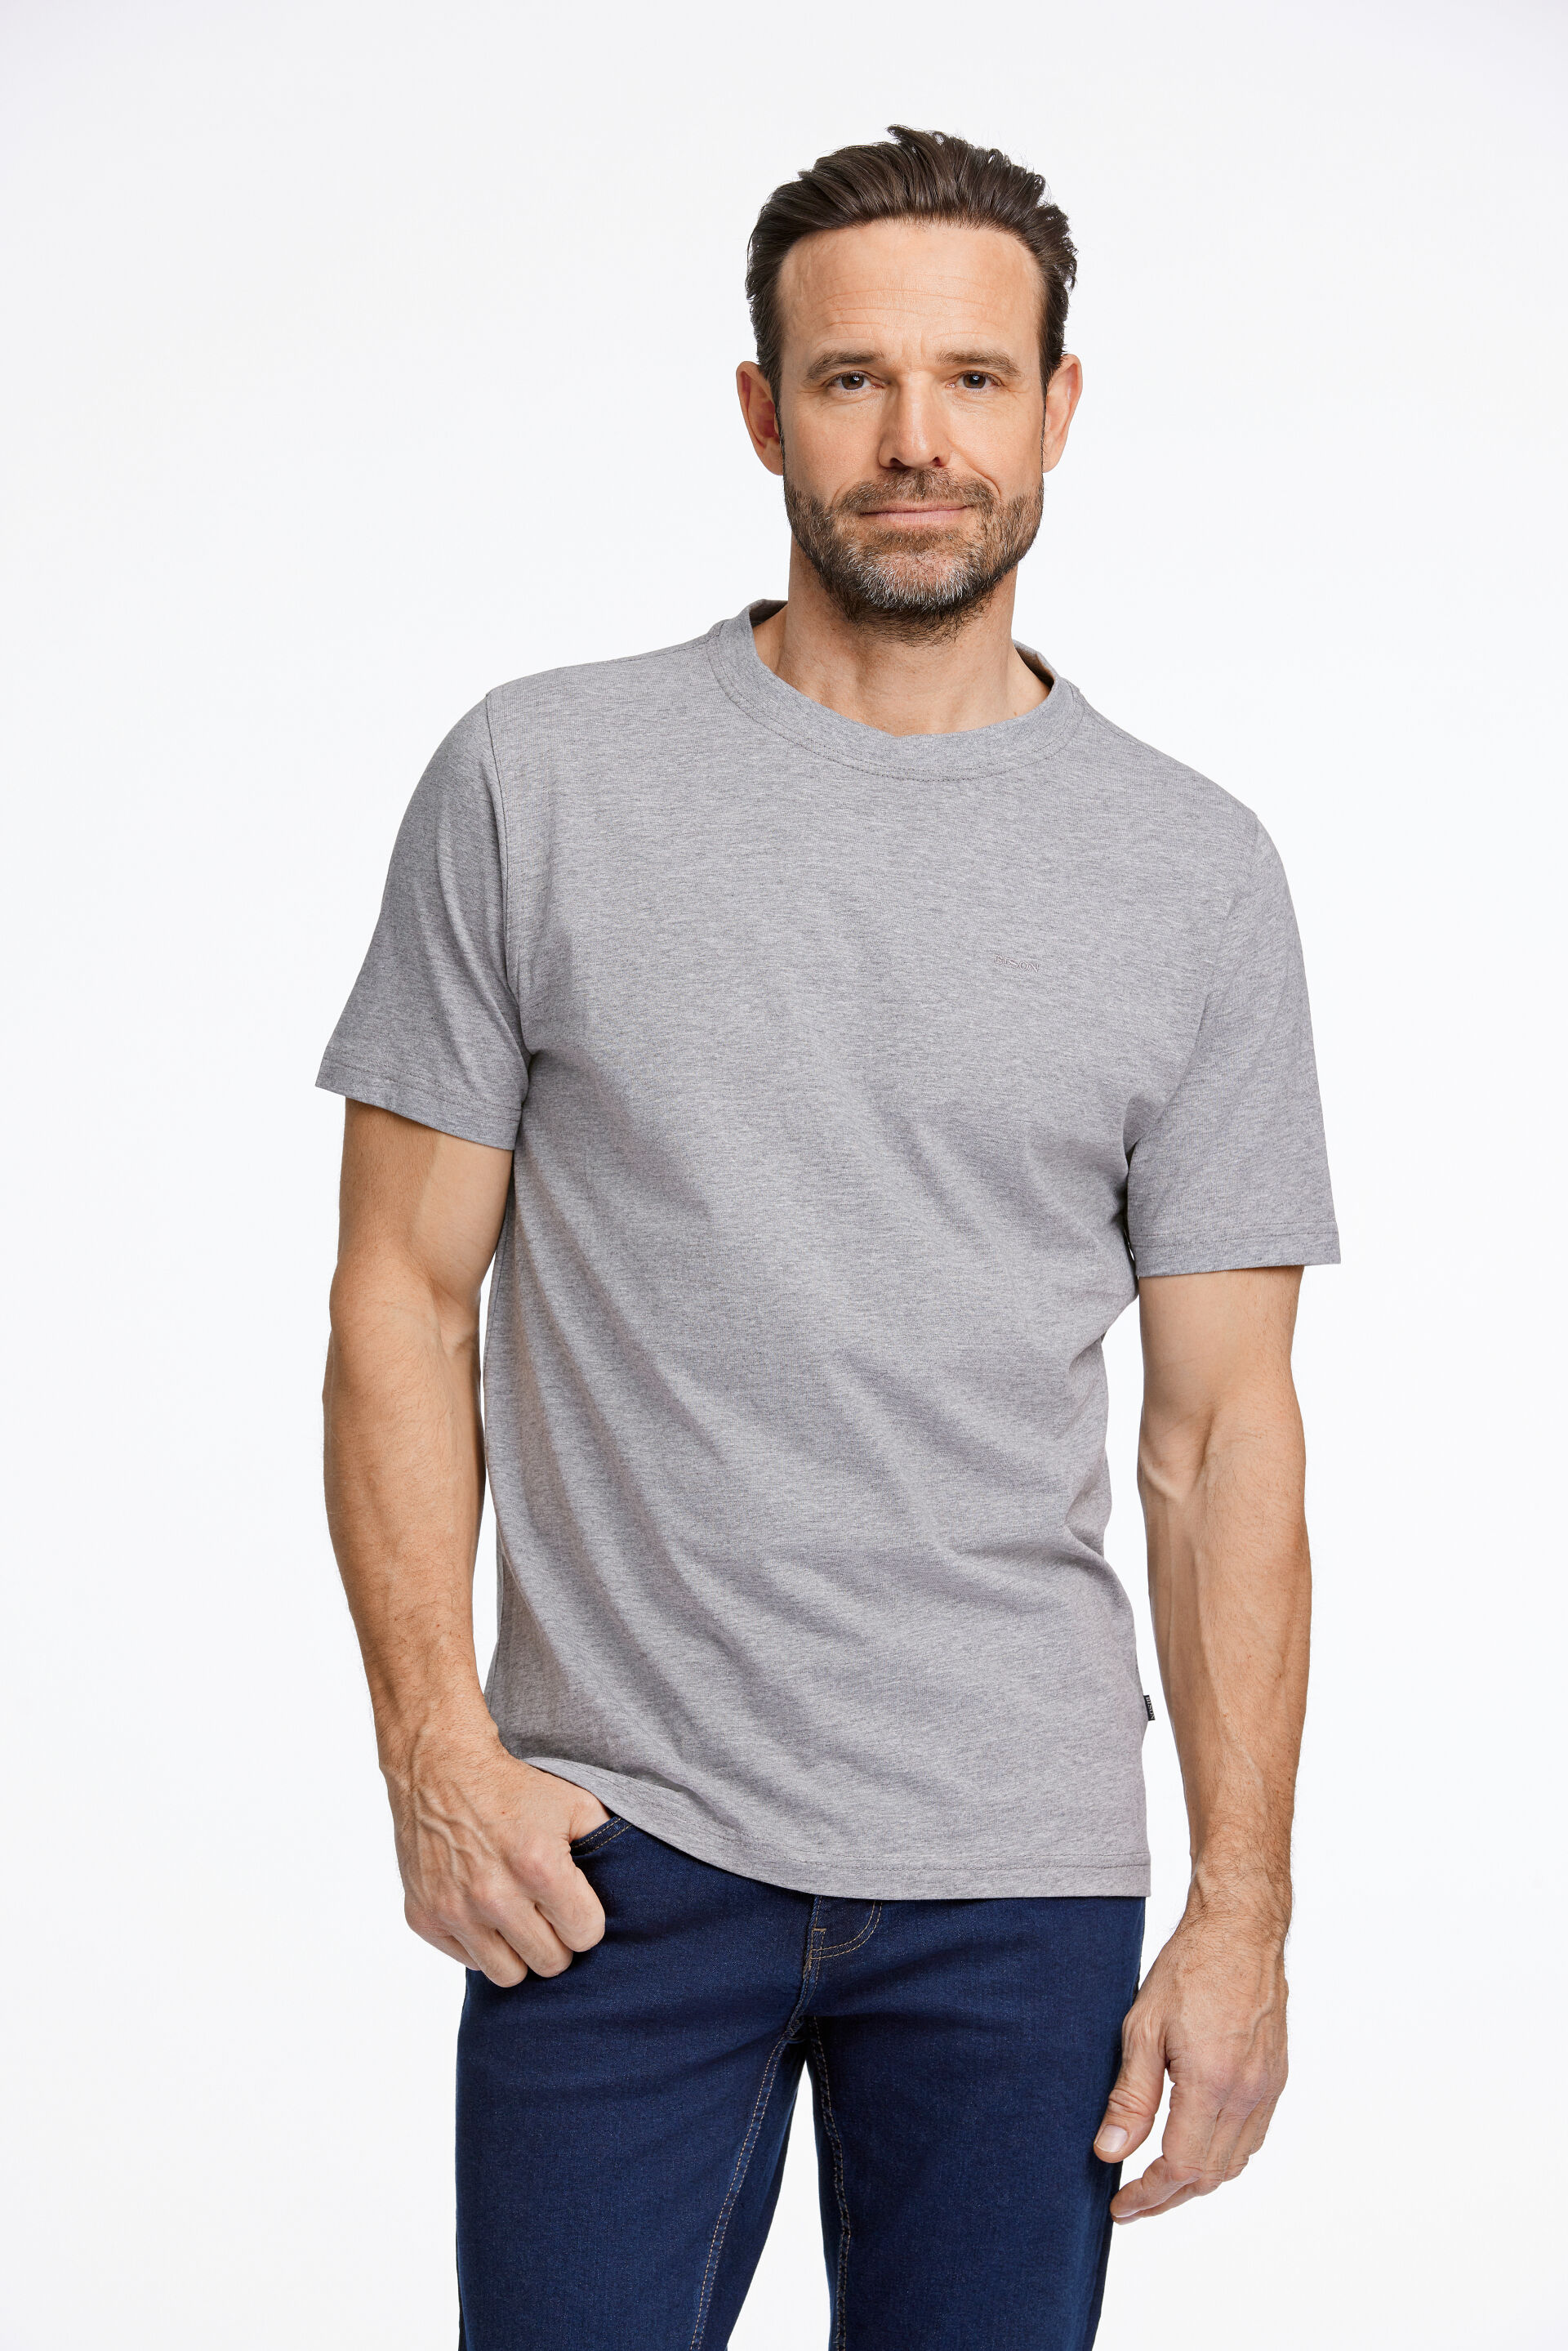 Model i grå Bison T-shirt og sorte Bison jeans